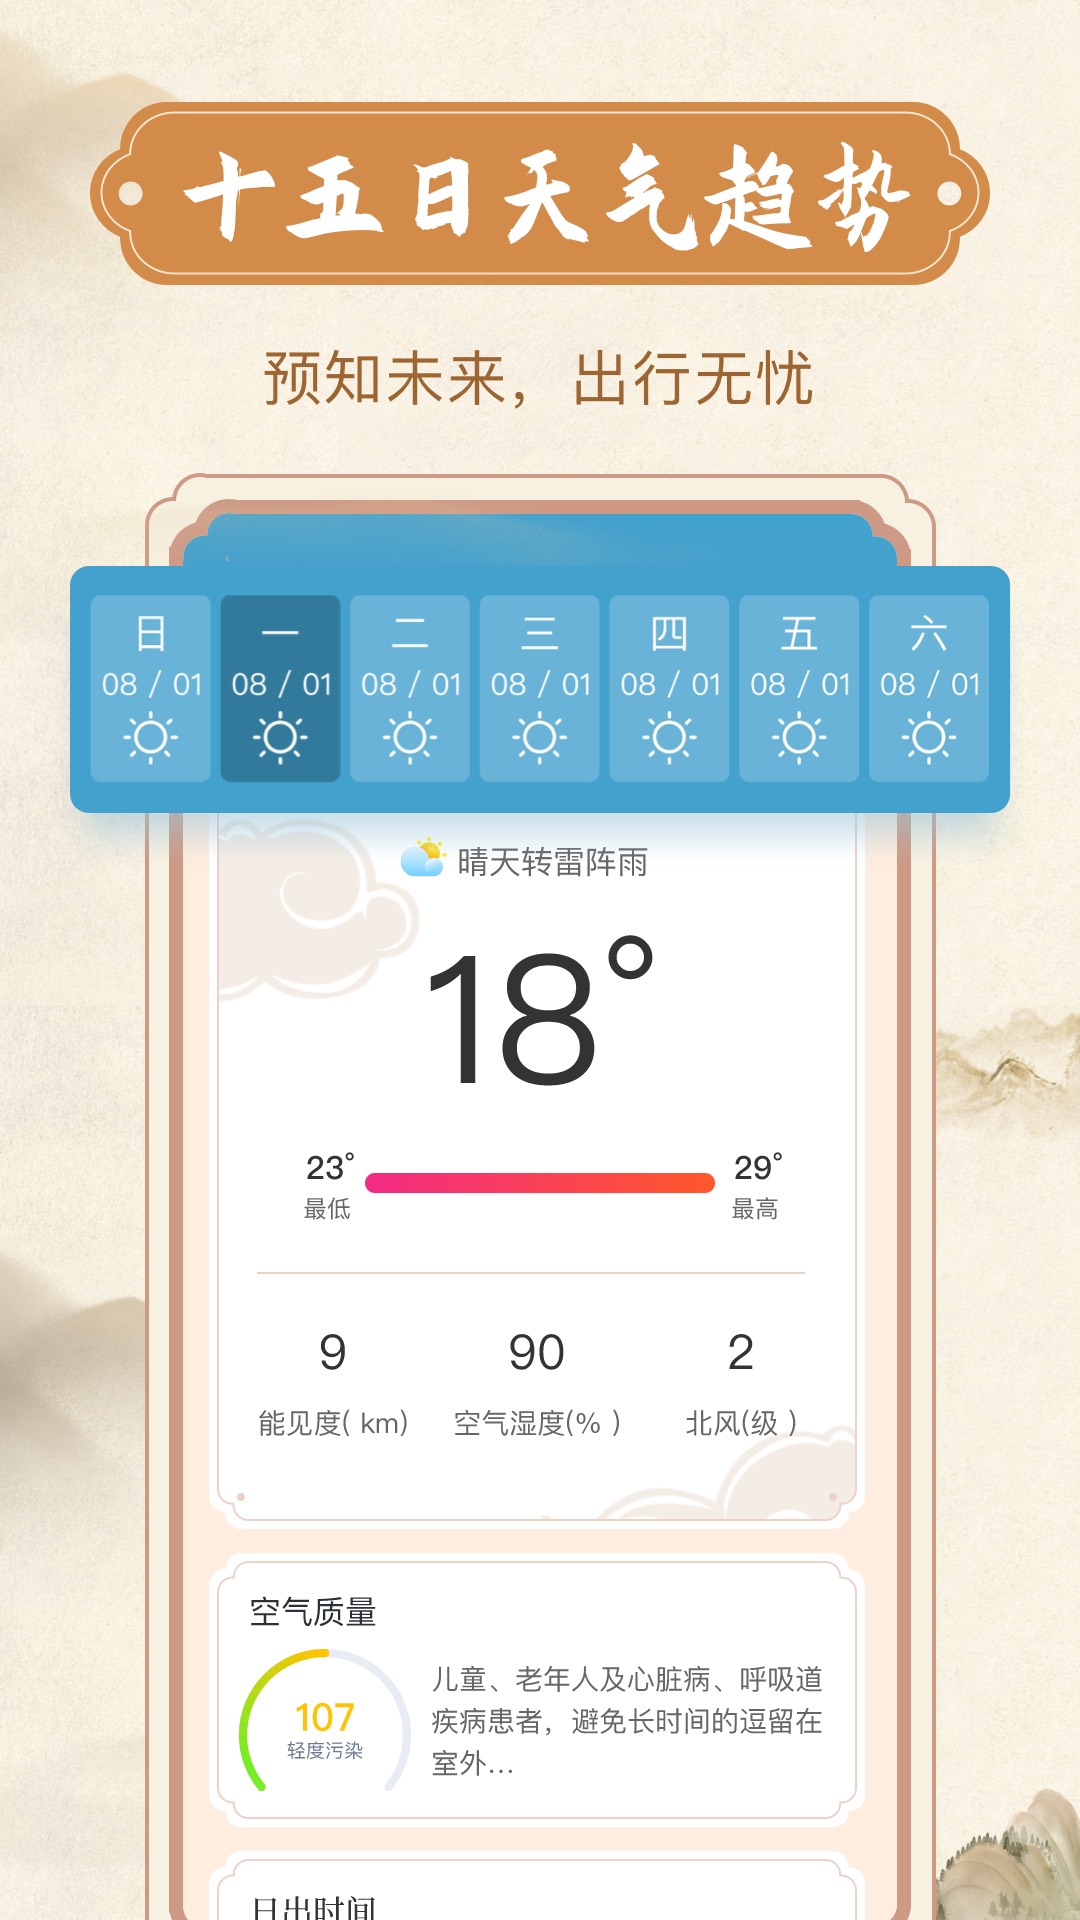 烟雨天气app安卓版图片1